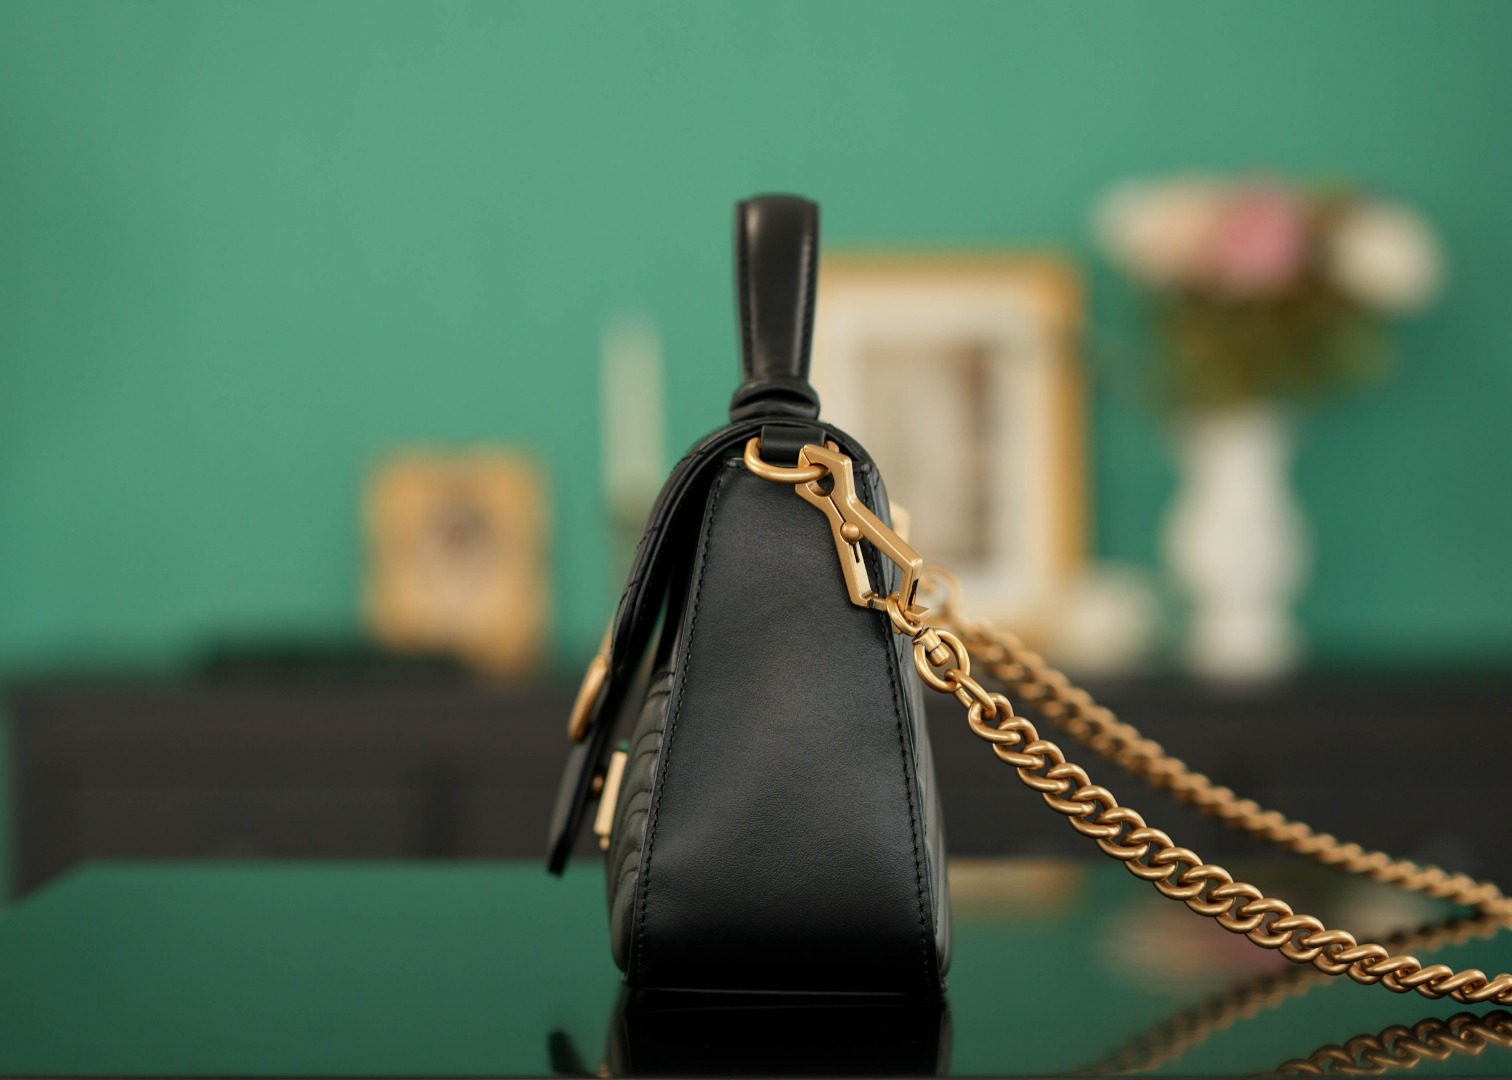 正品级Marmont系列绗缝手提包邮差包黑色21cm原厂皮全铜五金正品售价128,500独家原厂皮发售限